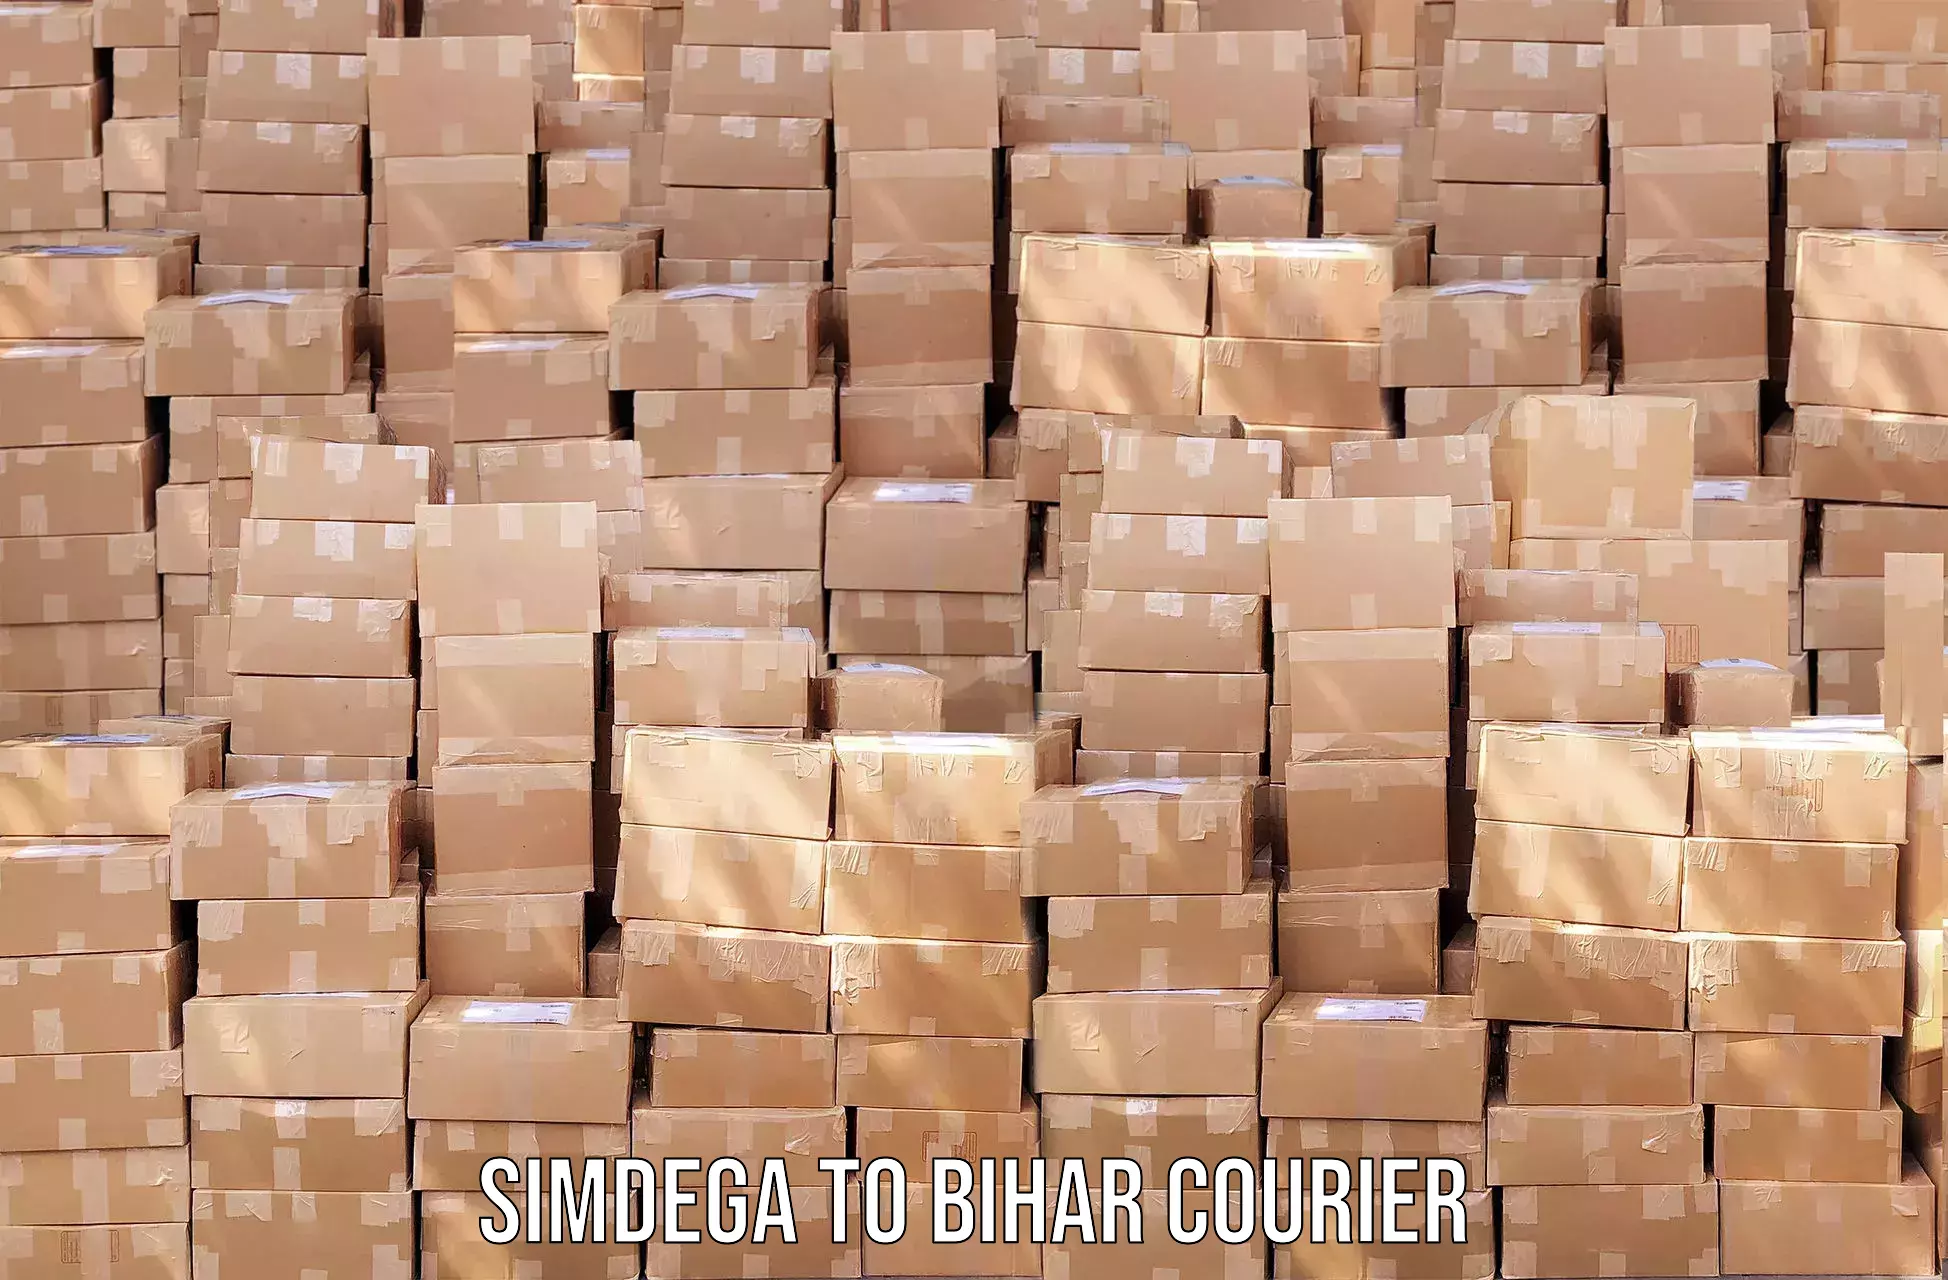 On-call courier service Simdega to Sandesh